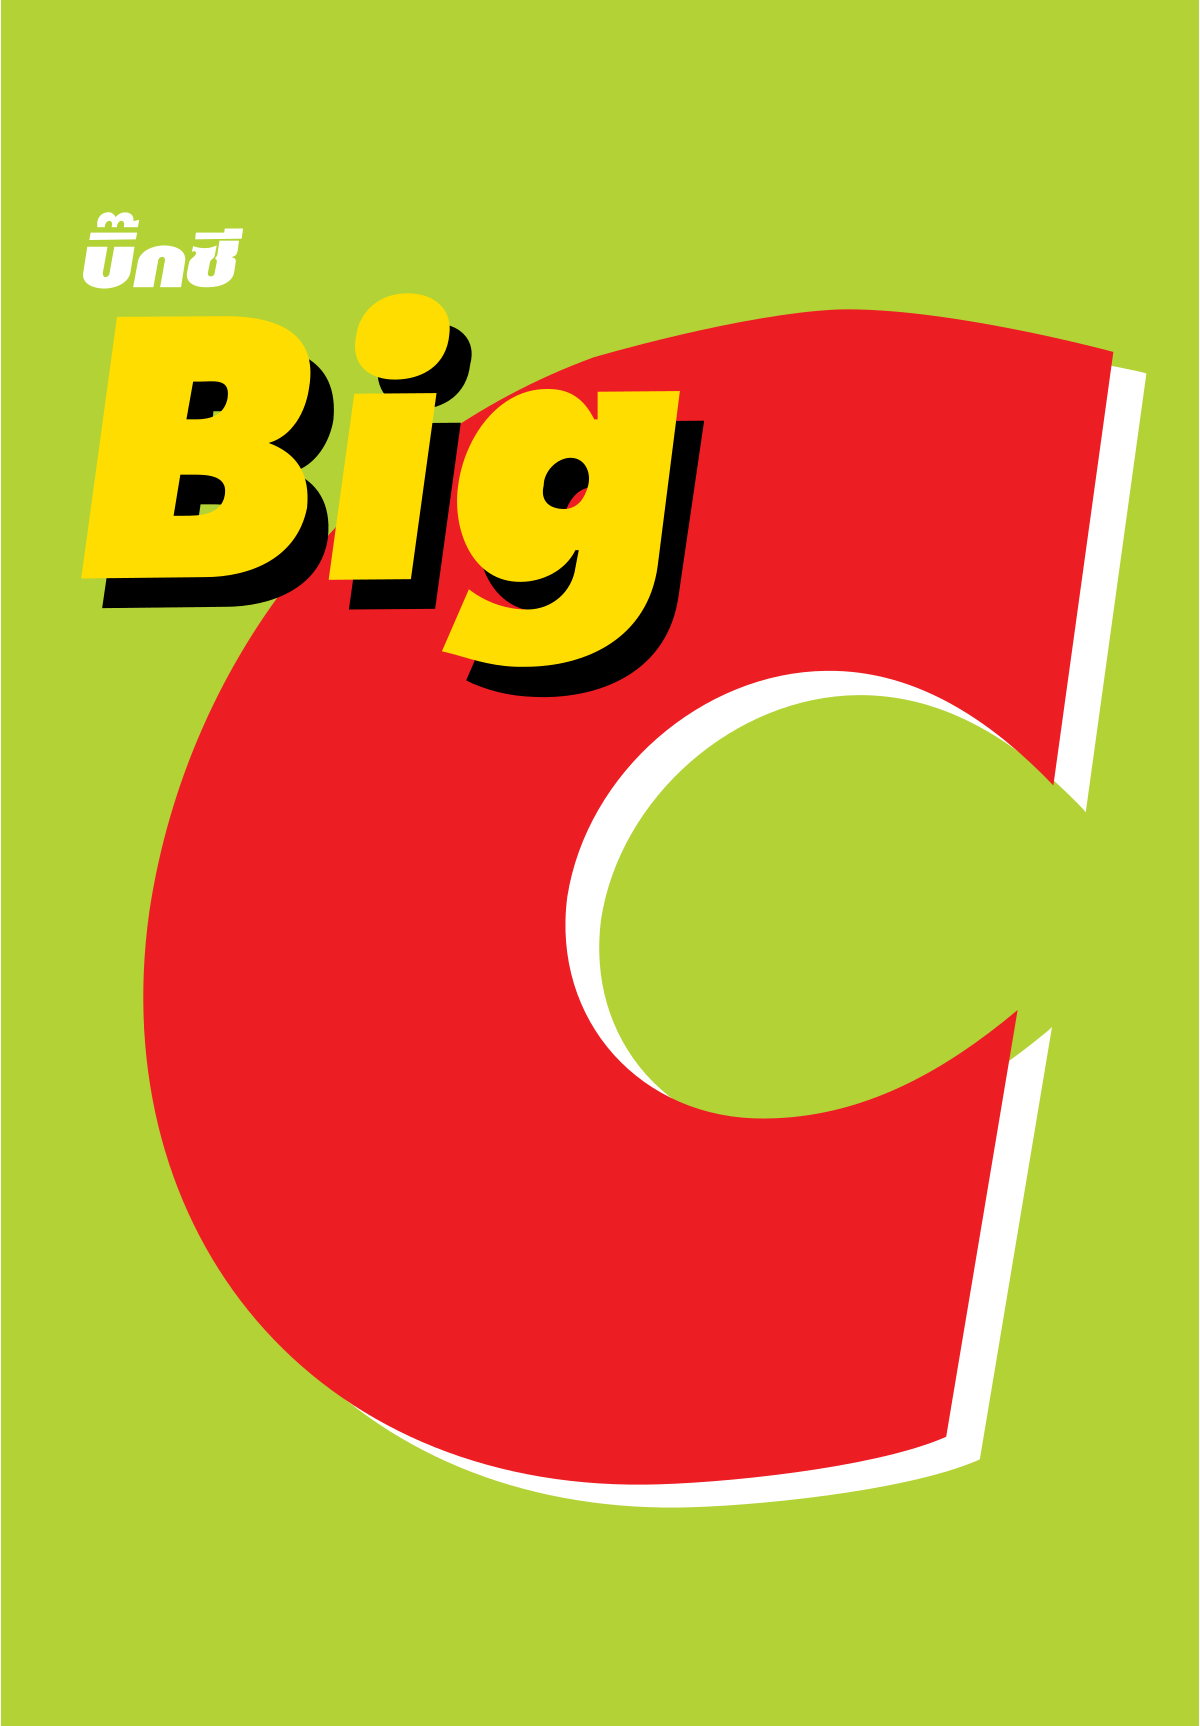 Circle C Logo - Big C